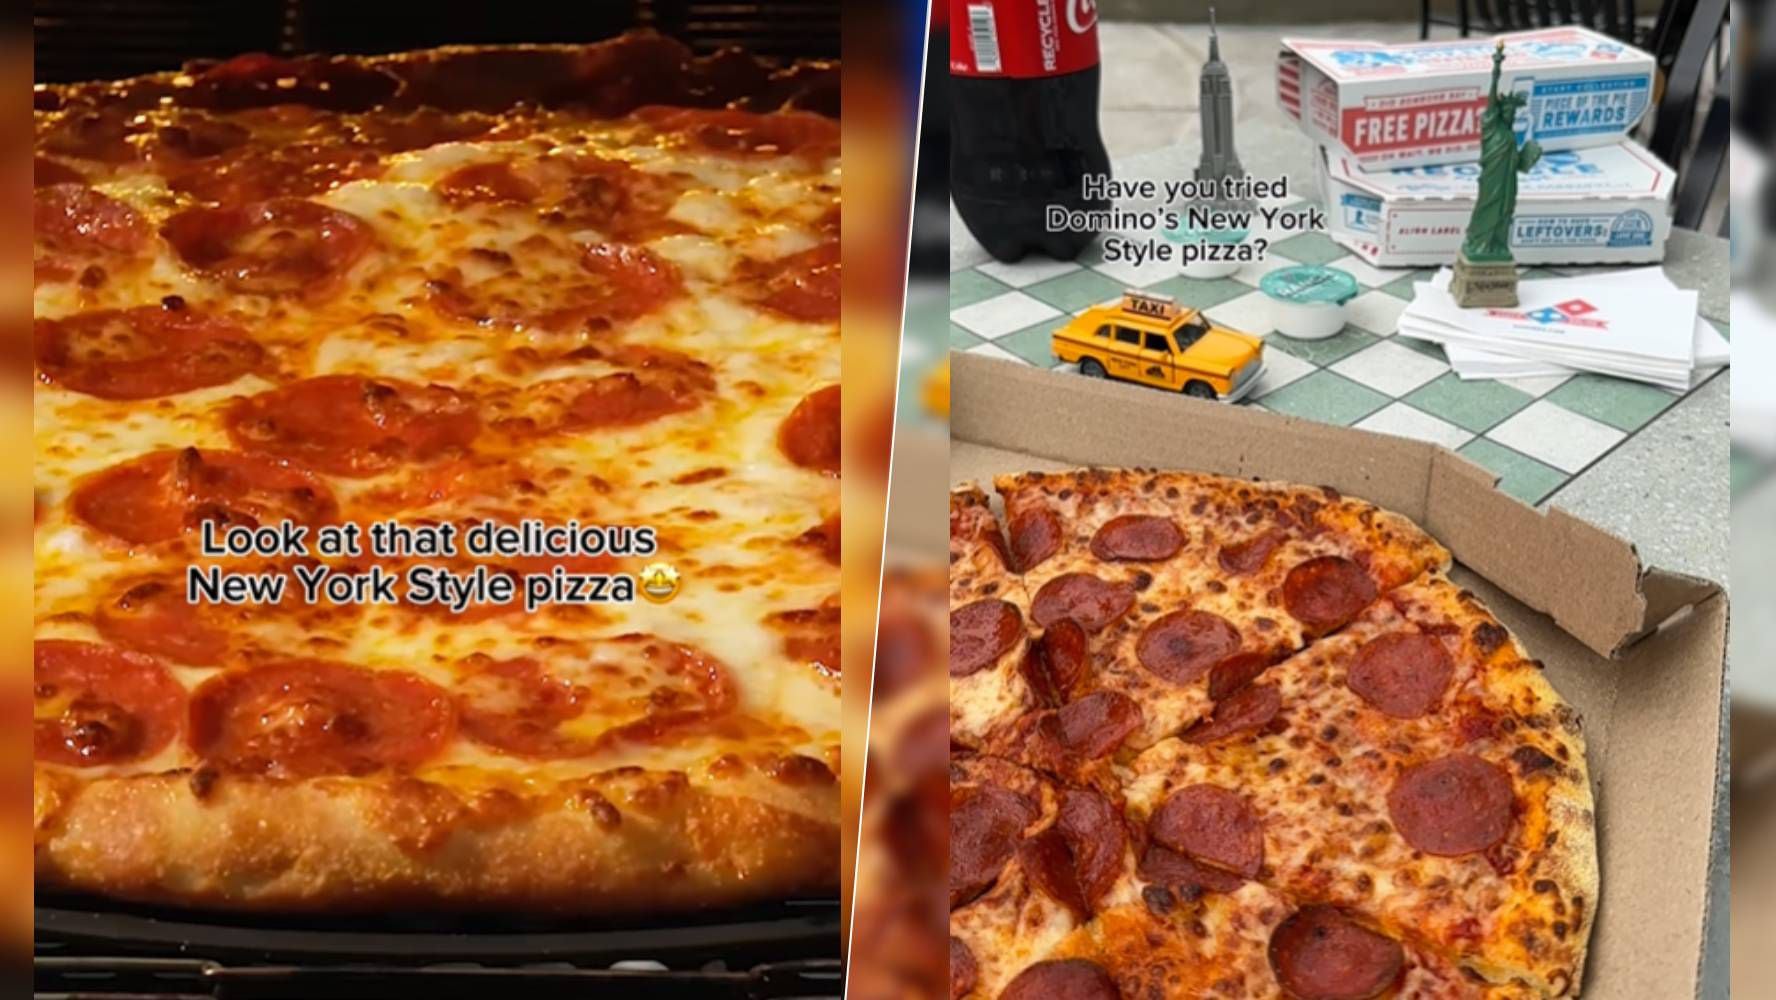 Domino's ha intentado ofrecer descuentos y la nueva pizza estilo NY.